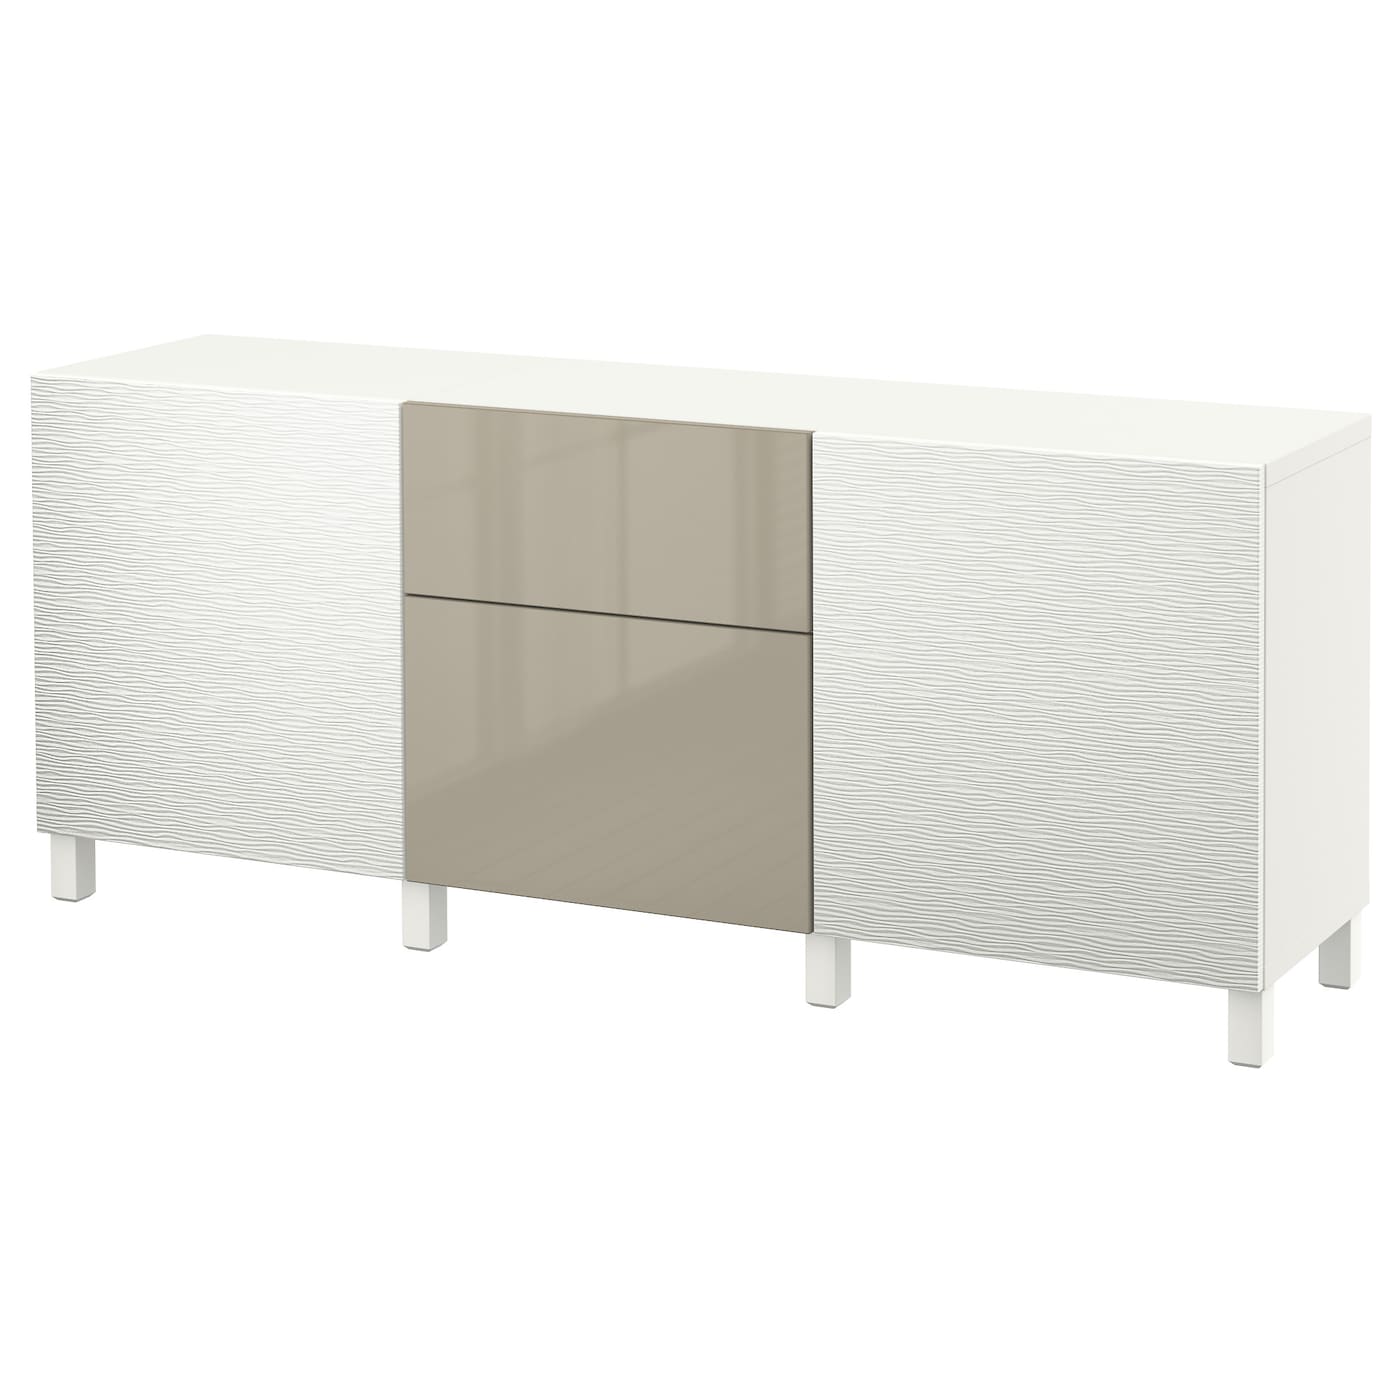 IKEA BESTÅ Kombinacja z szufladami, Laxviken biały/Selsviken wysoki połysk beż, 180x40x74 cm